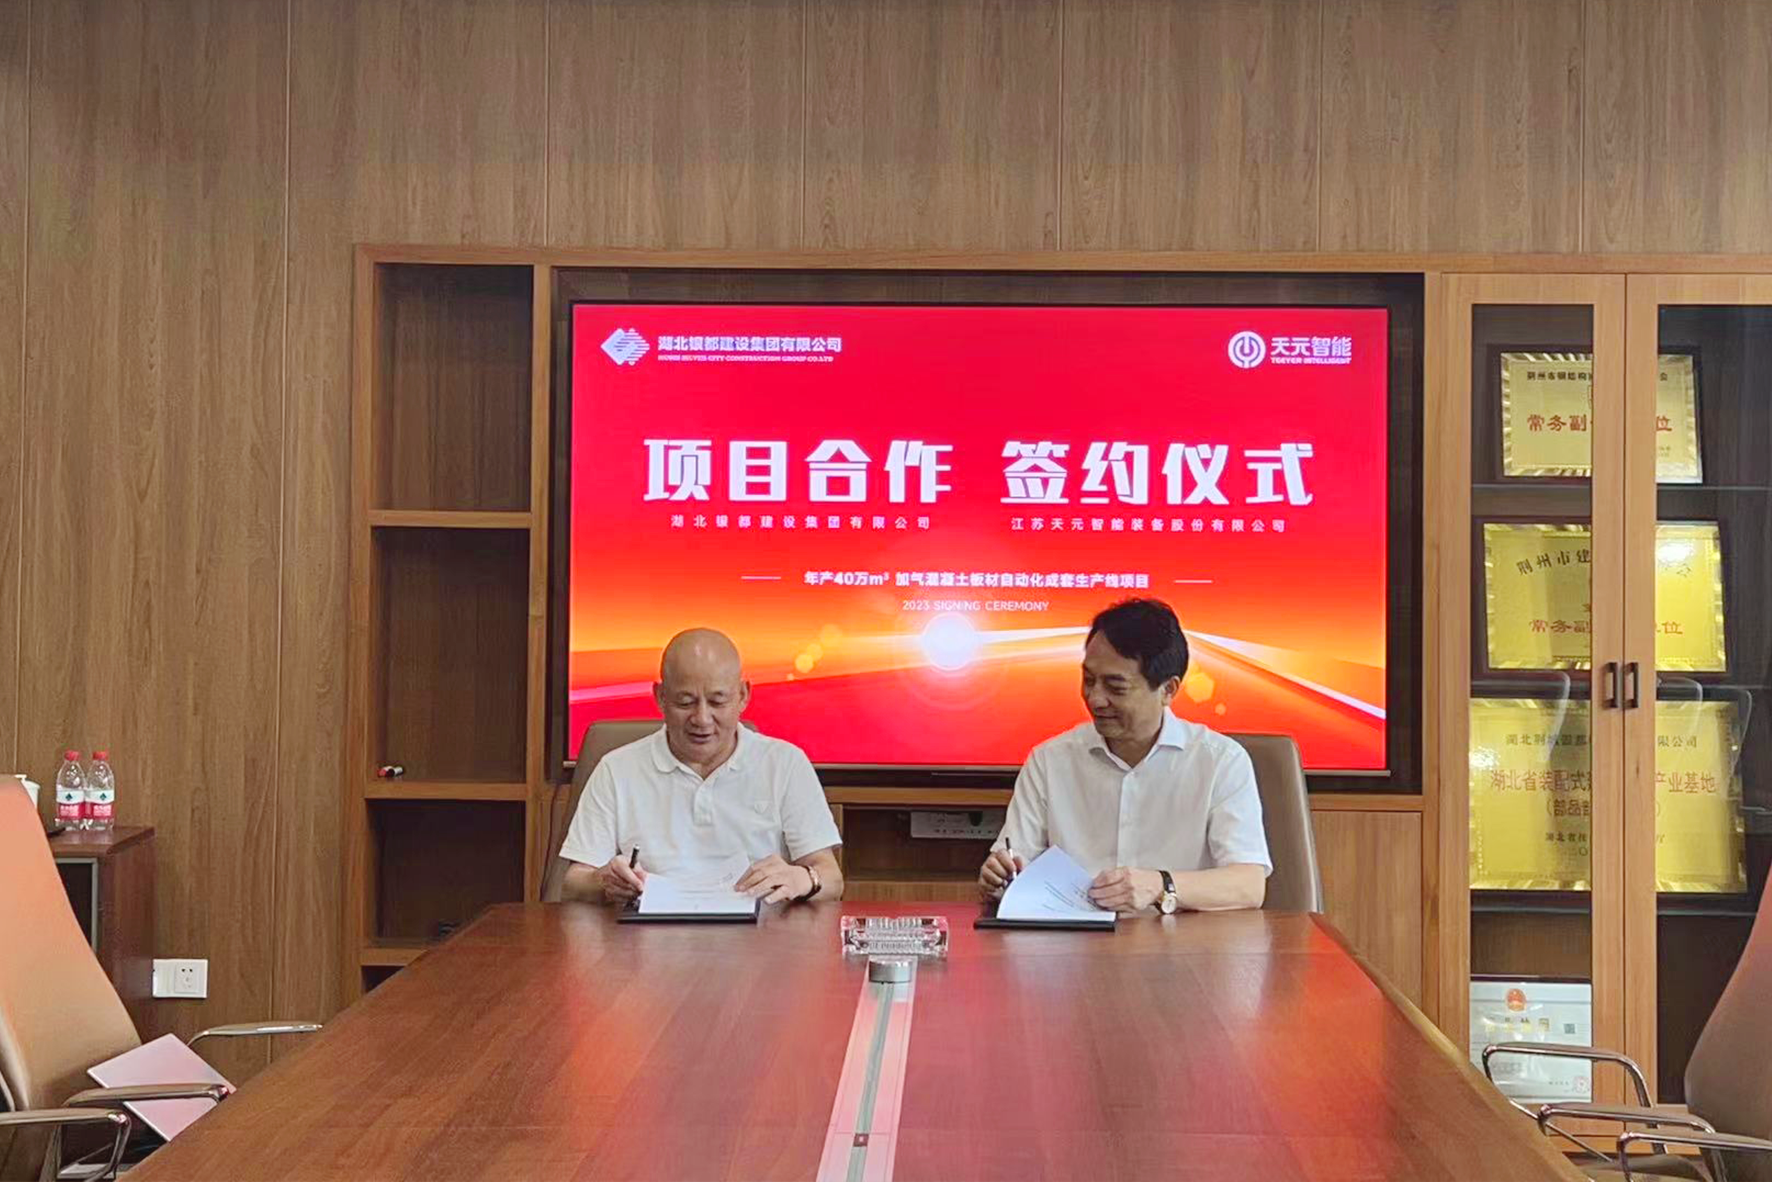 Teeyer и Hubei Silver City Construction Group Co.Ltd начинают стратегическое дружественное сотрудничество